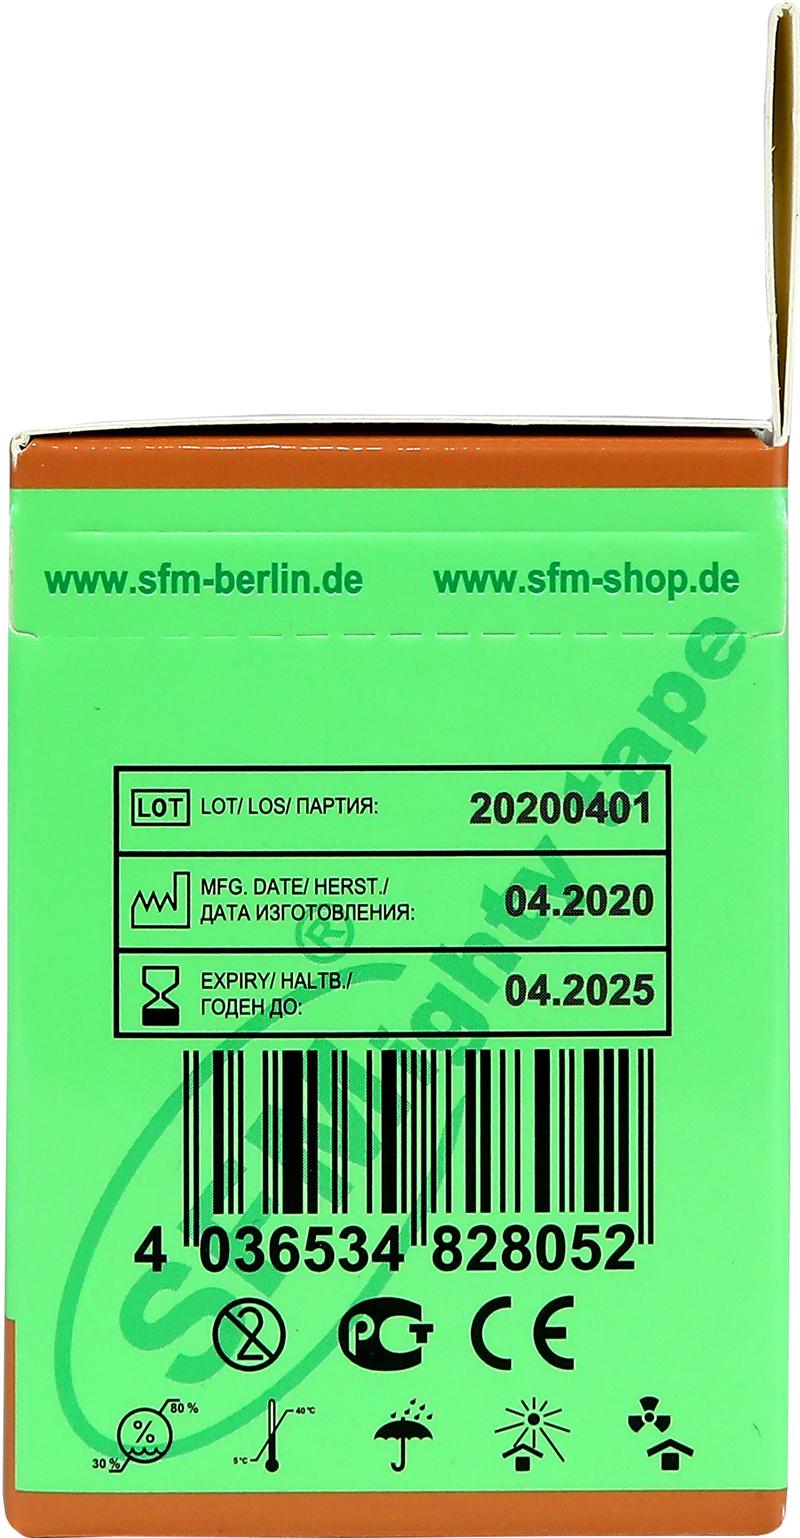 Лента кинезиологическая SFM-Plaster, на хлопковой основе, 5см Х 500см, бежевого цвета, в диспенсере, с логотипом